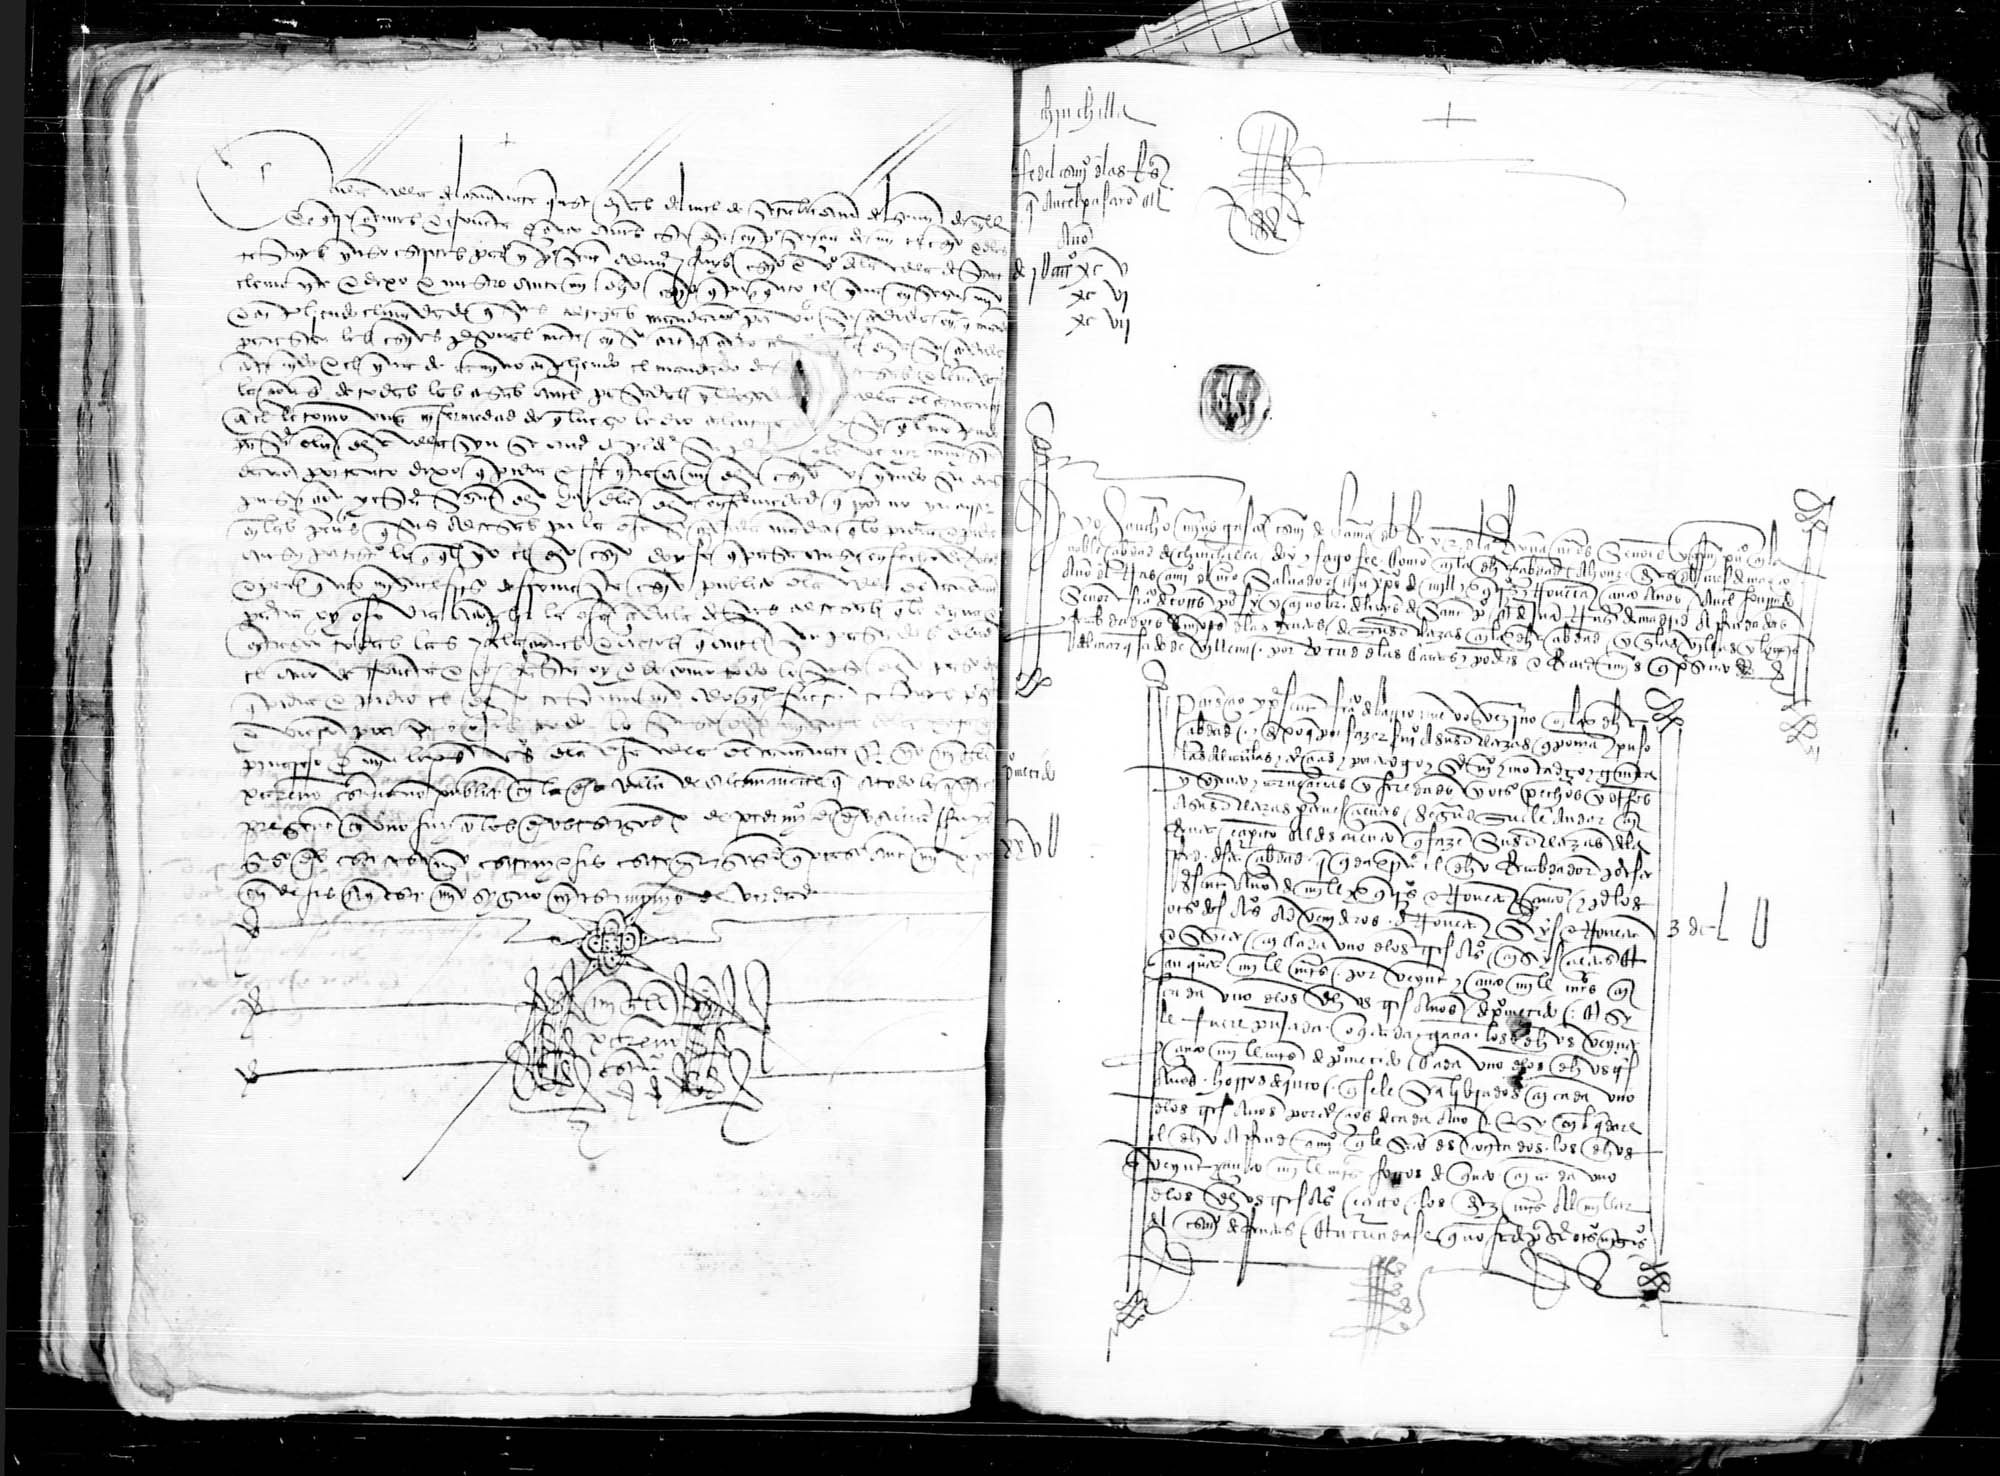 Testimonio notarial de los autos para el arrendamiento de las rentas reales de la ciudad de Chinchilla durante el periodo 1495-1497, rematadas en Francisco de Barrionuevo, vecino de la misma.